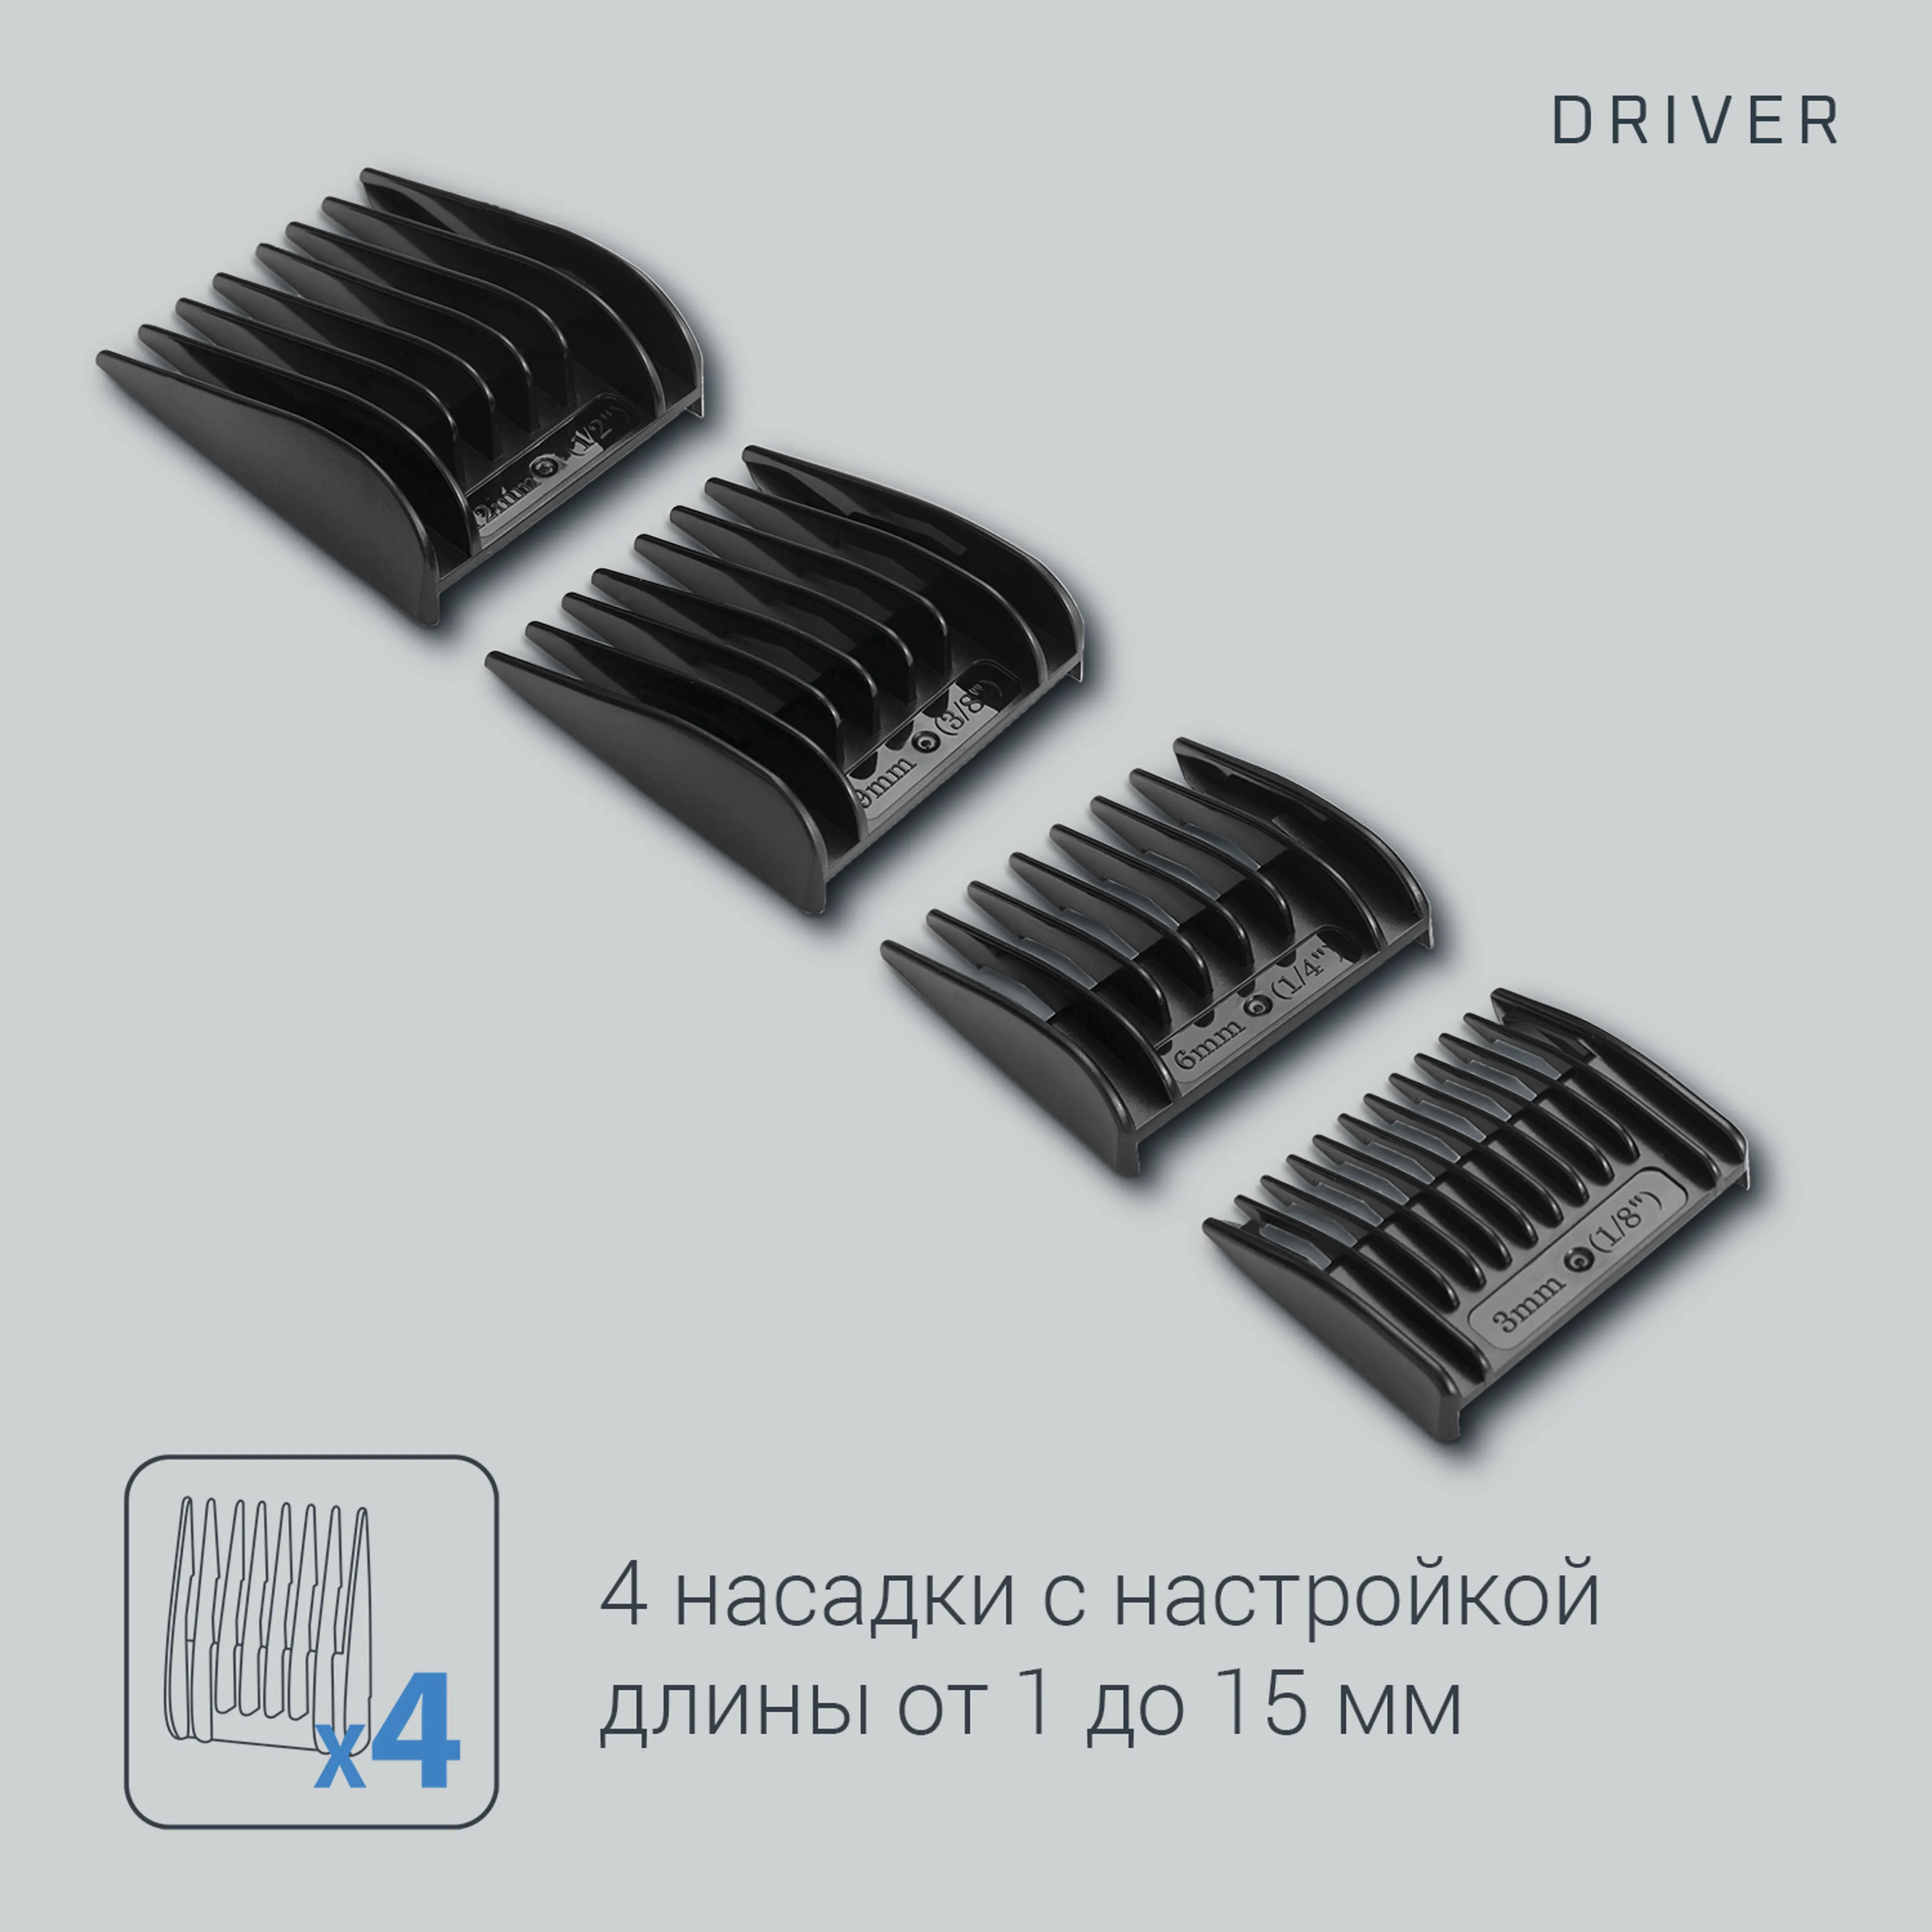 Машинка для стрижки волос Rowenta Driver TN1609F0